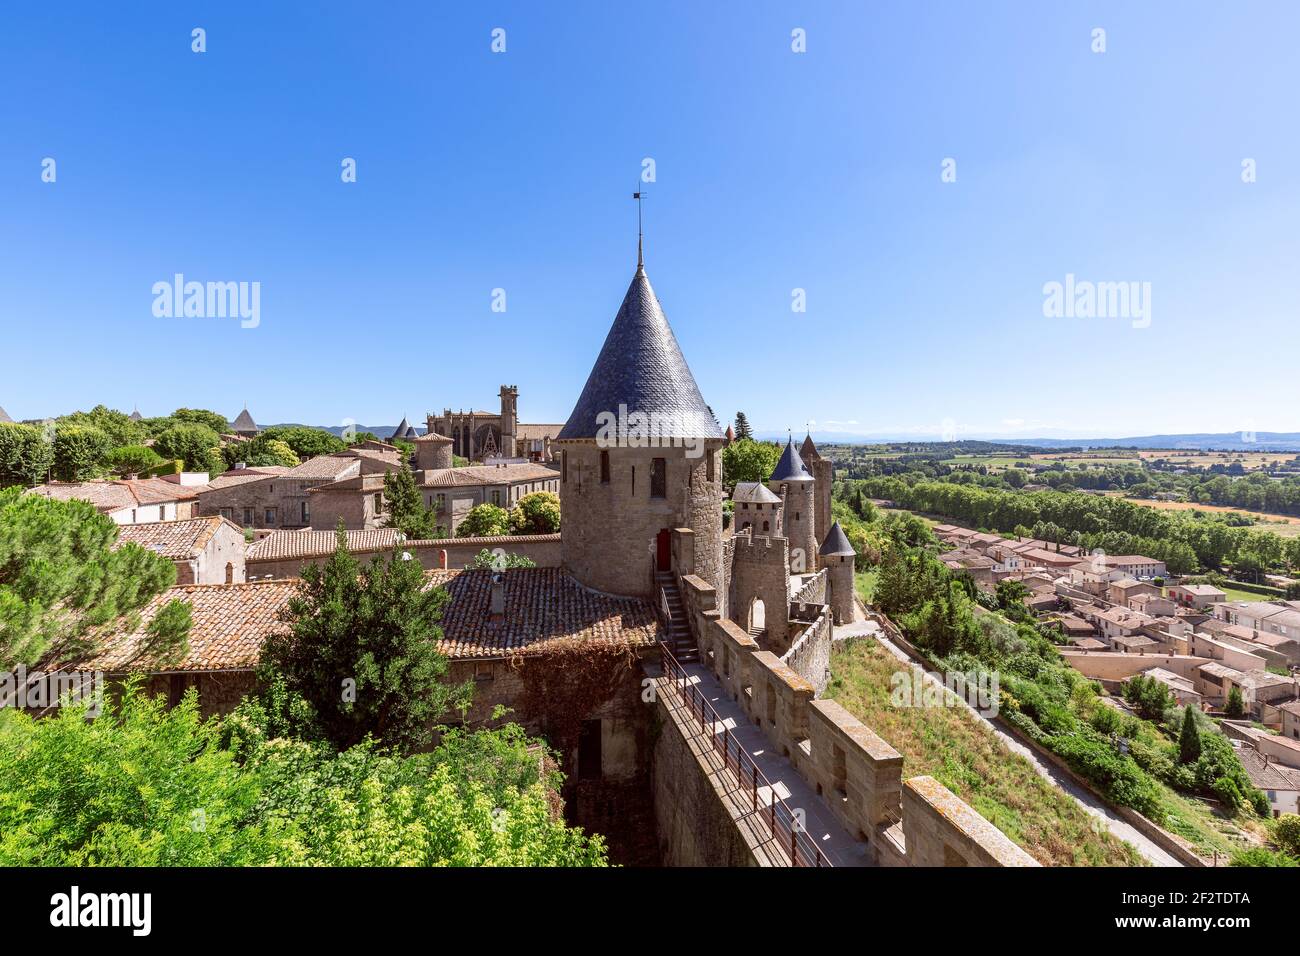 Hermosa vista del castillo de Carcassonne con la catedral principal dentro de las murallas y el casco antiguo Foto de stock